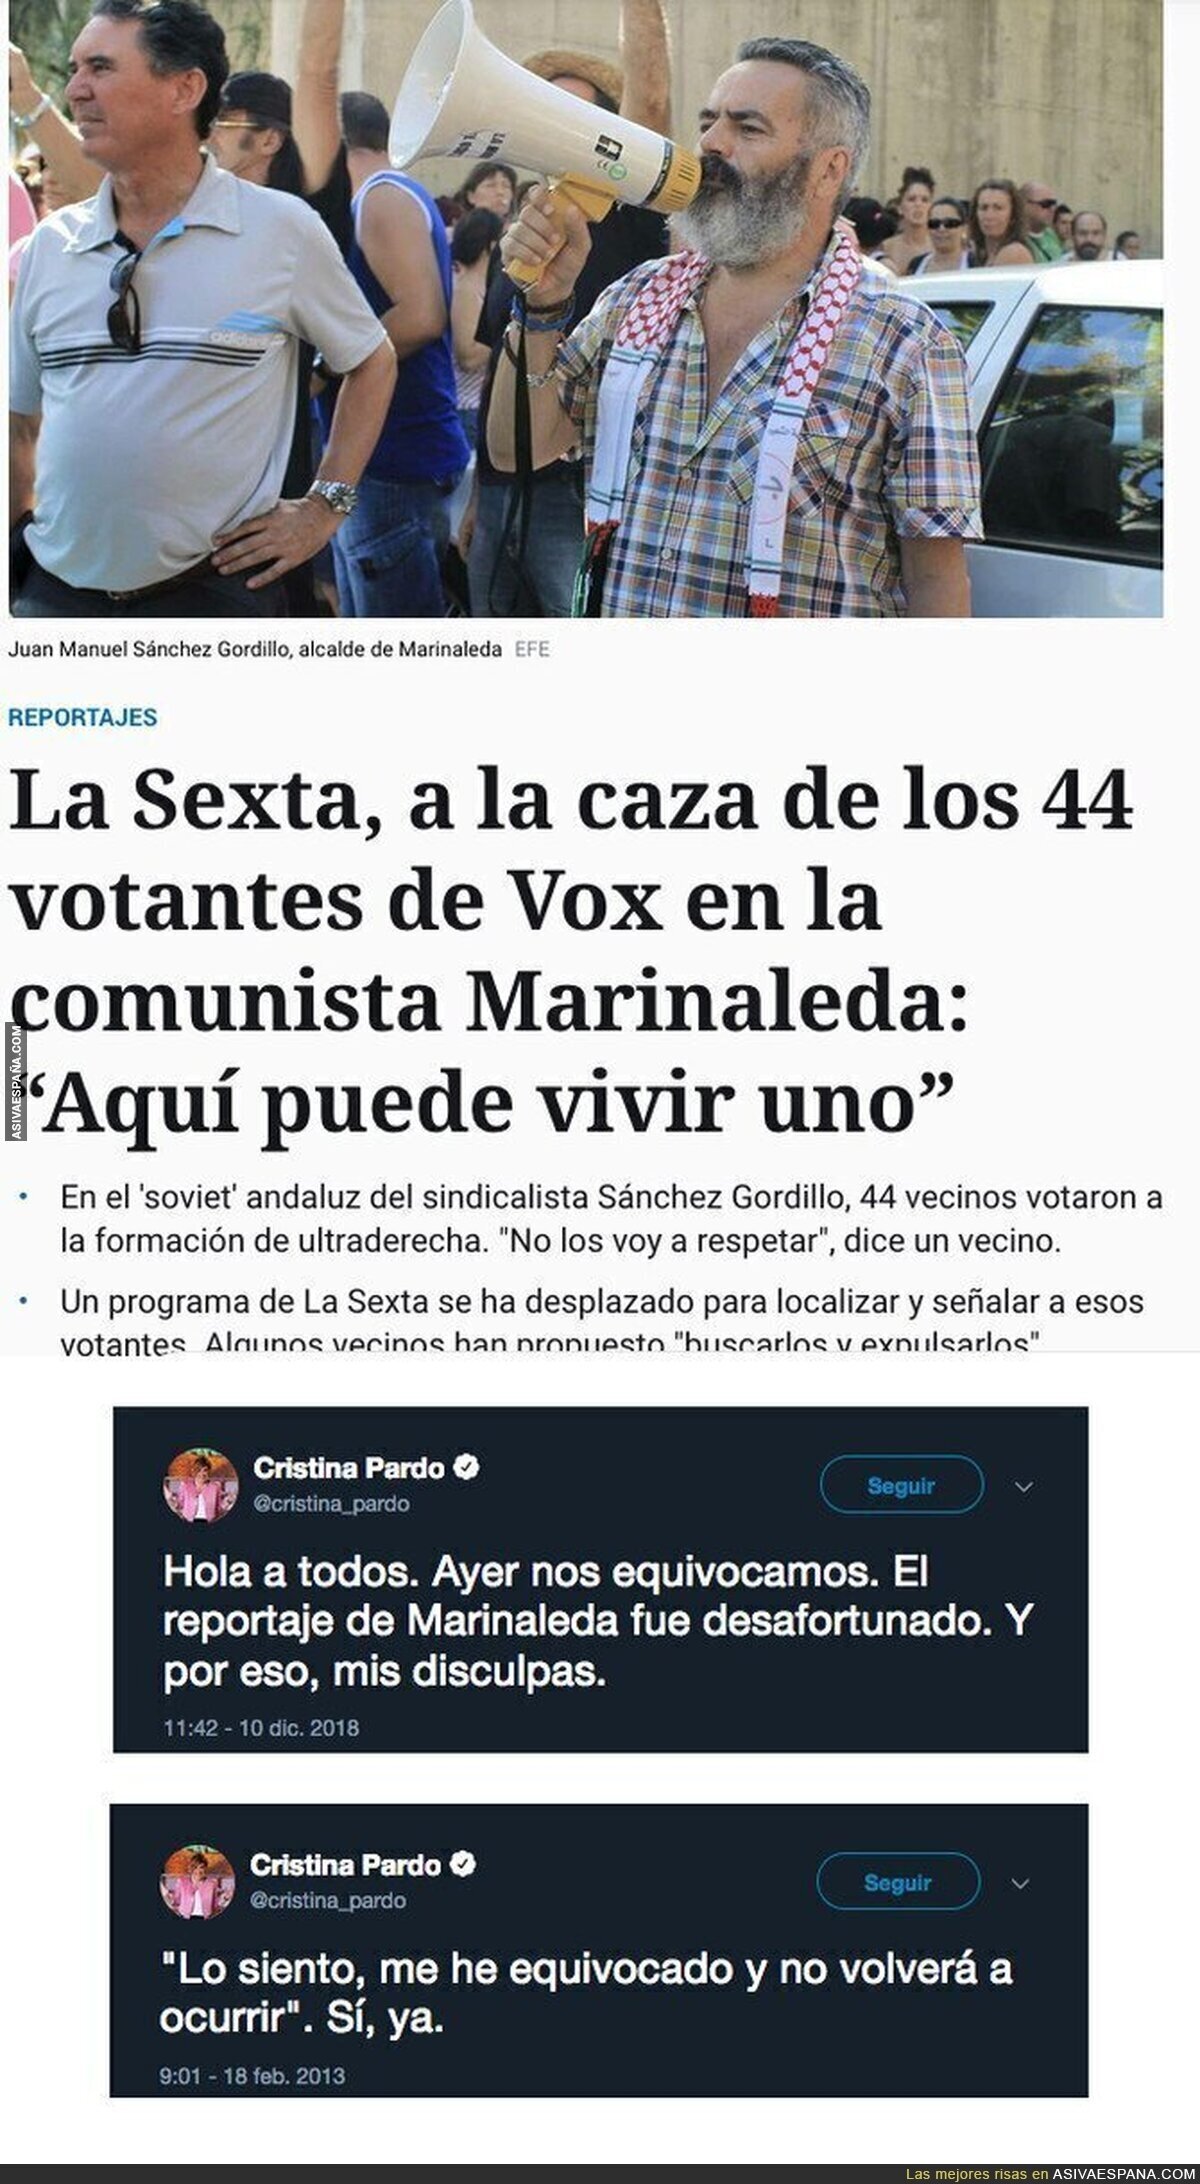 Cristina Pardo pide perdón por ir a la caza de votantes de VOX en Marinaleda y le recuerdan este tuit de 2013